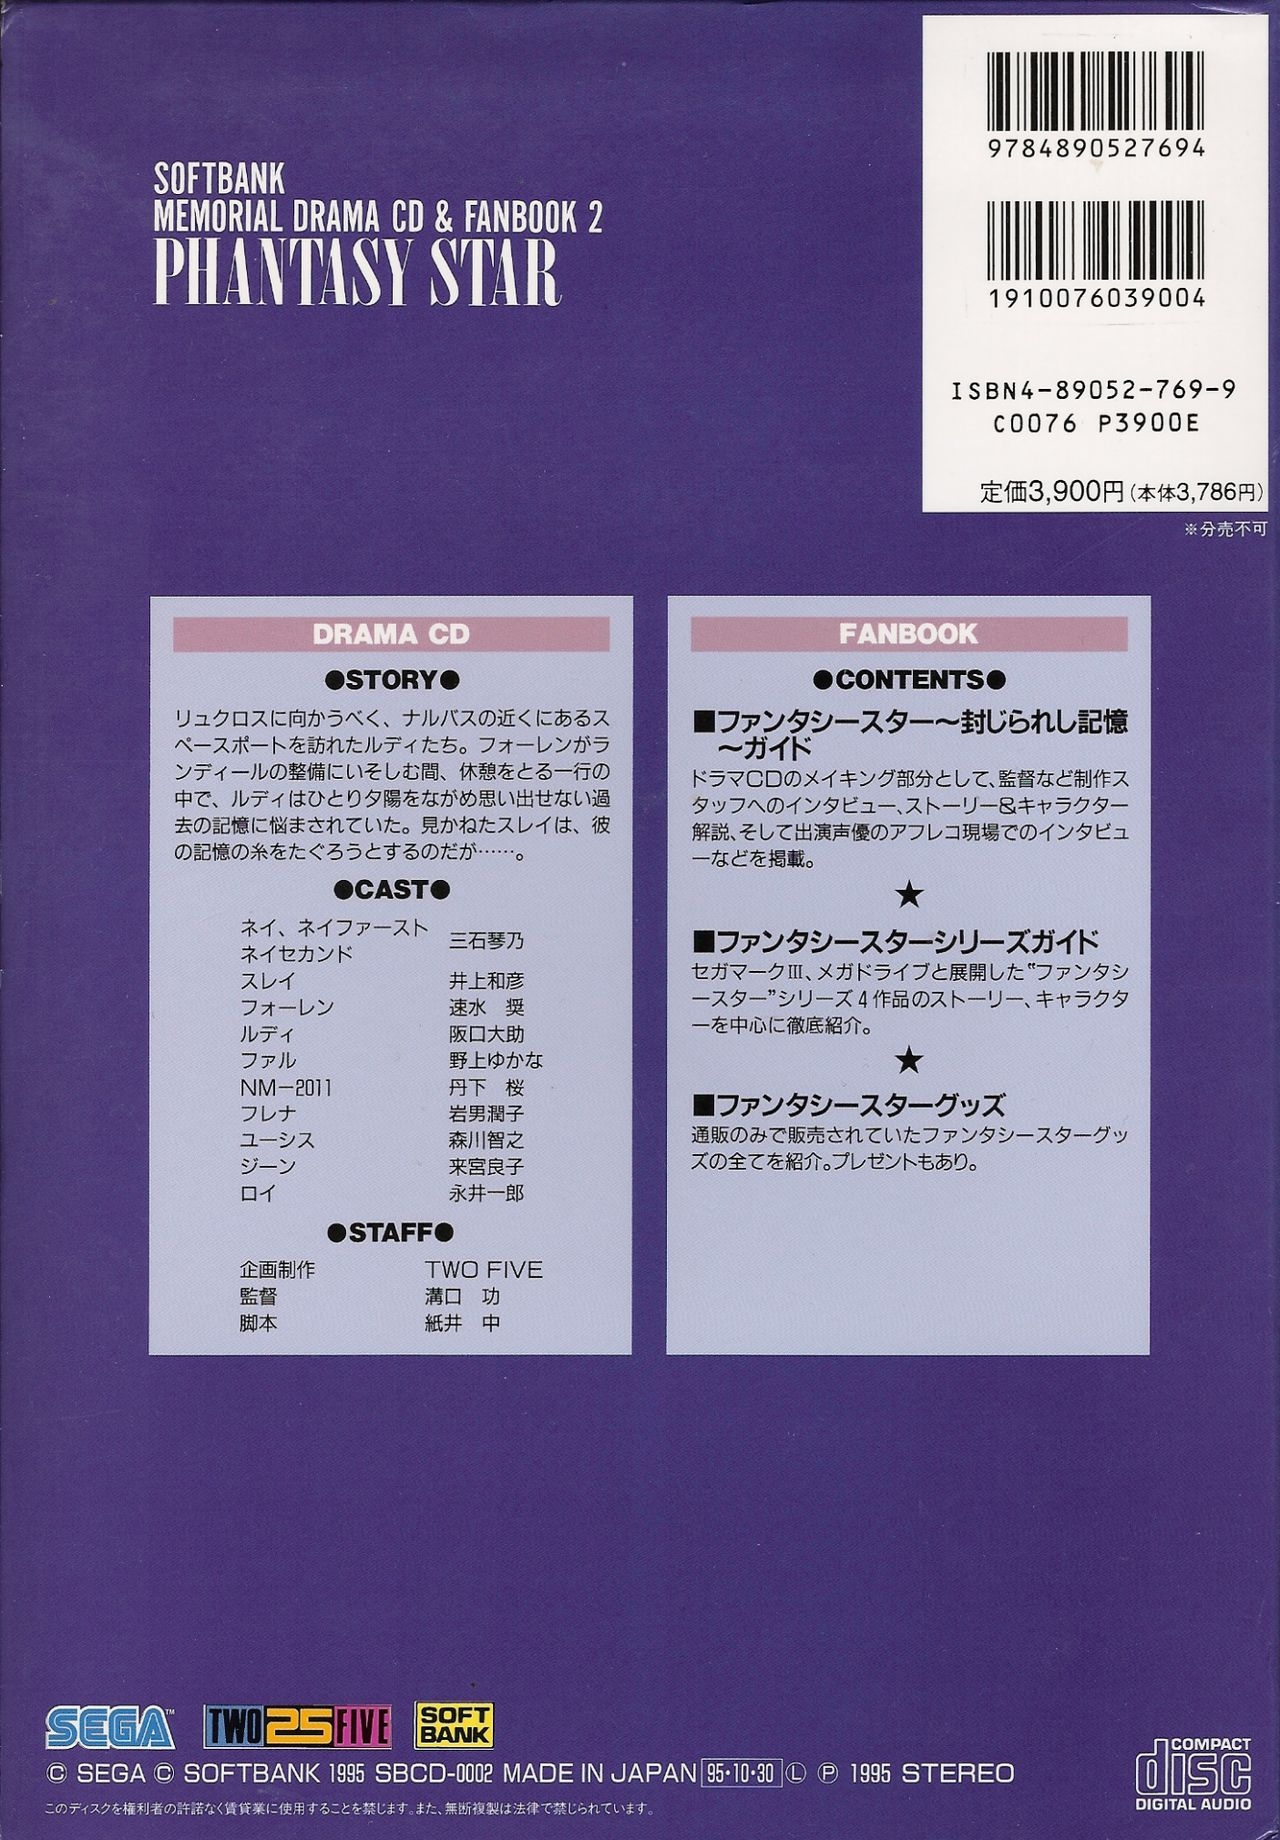 Phantasy Star Memorial Drama CD & Fanbook 2 55